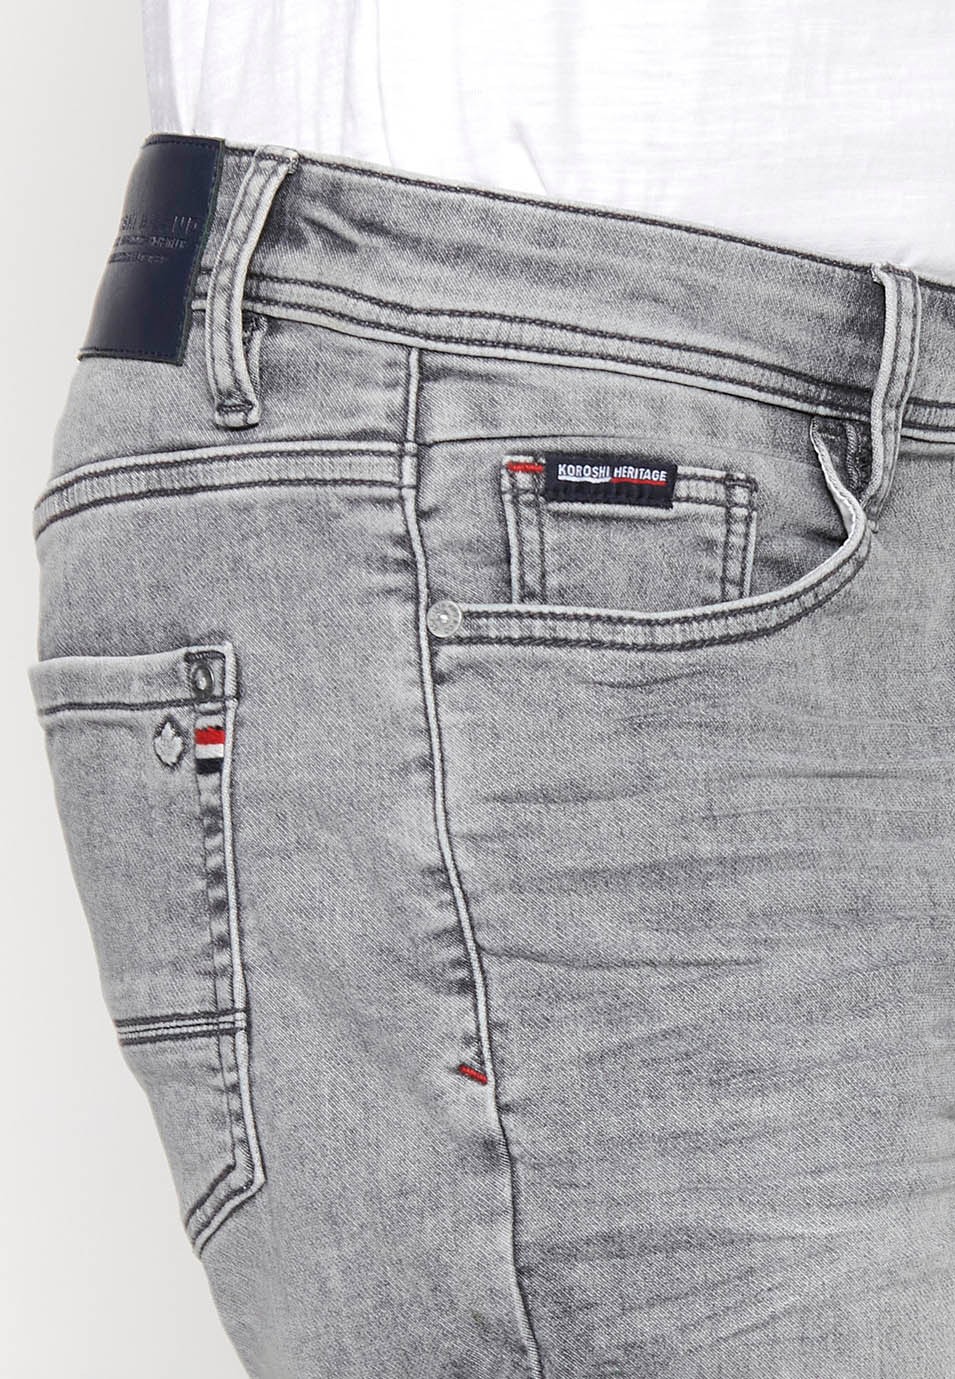 Jeansshorts mit Frontverschluss mit Reißverschluss und Knopf sowie fünf Taschen, eine Tasche in grauer Denim-Farbe für Herren